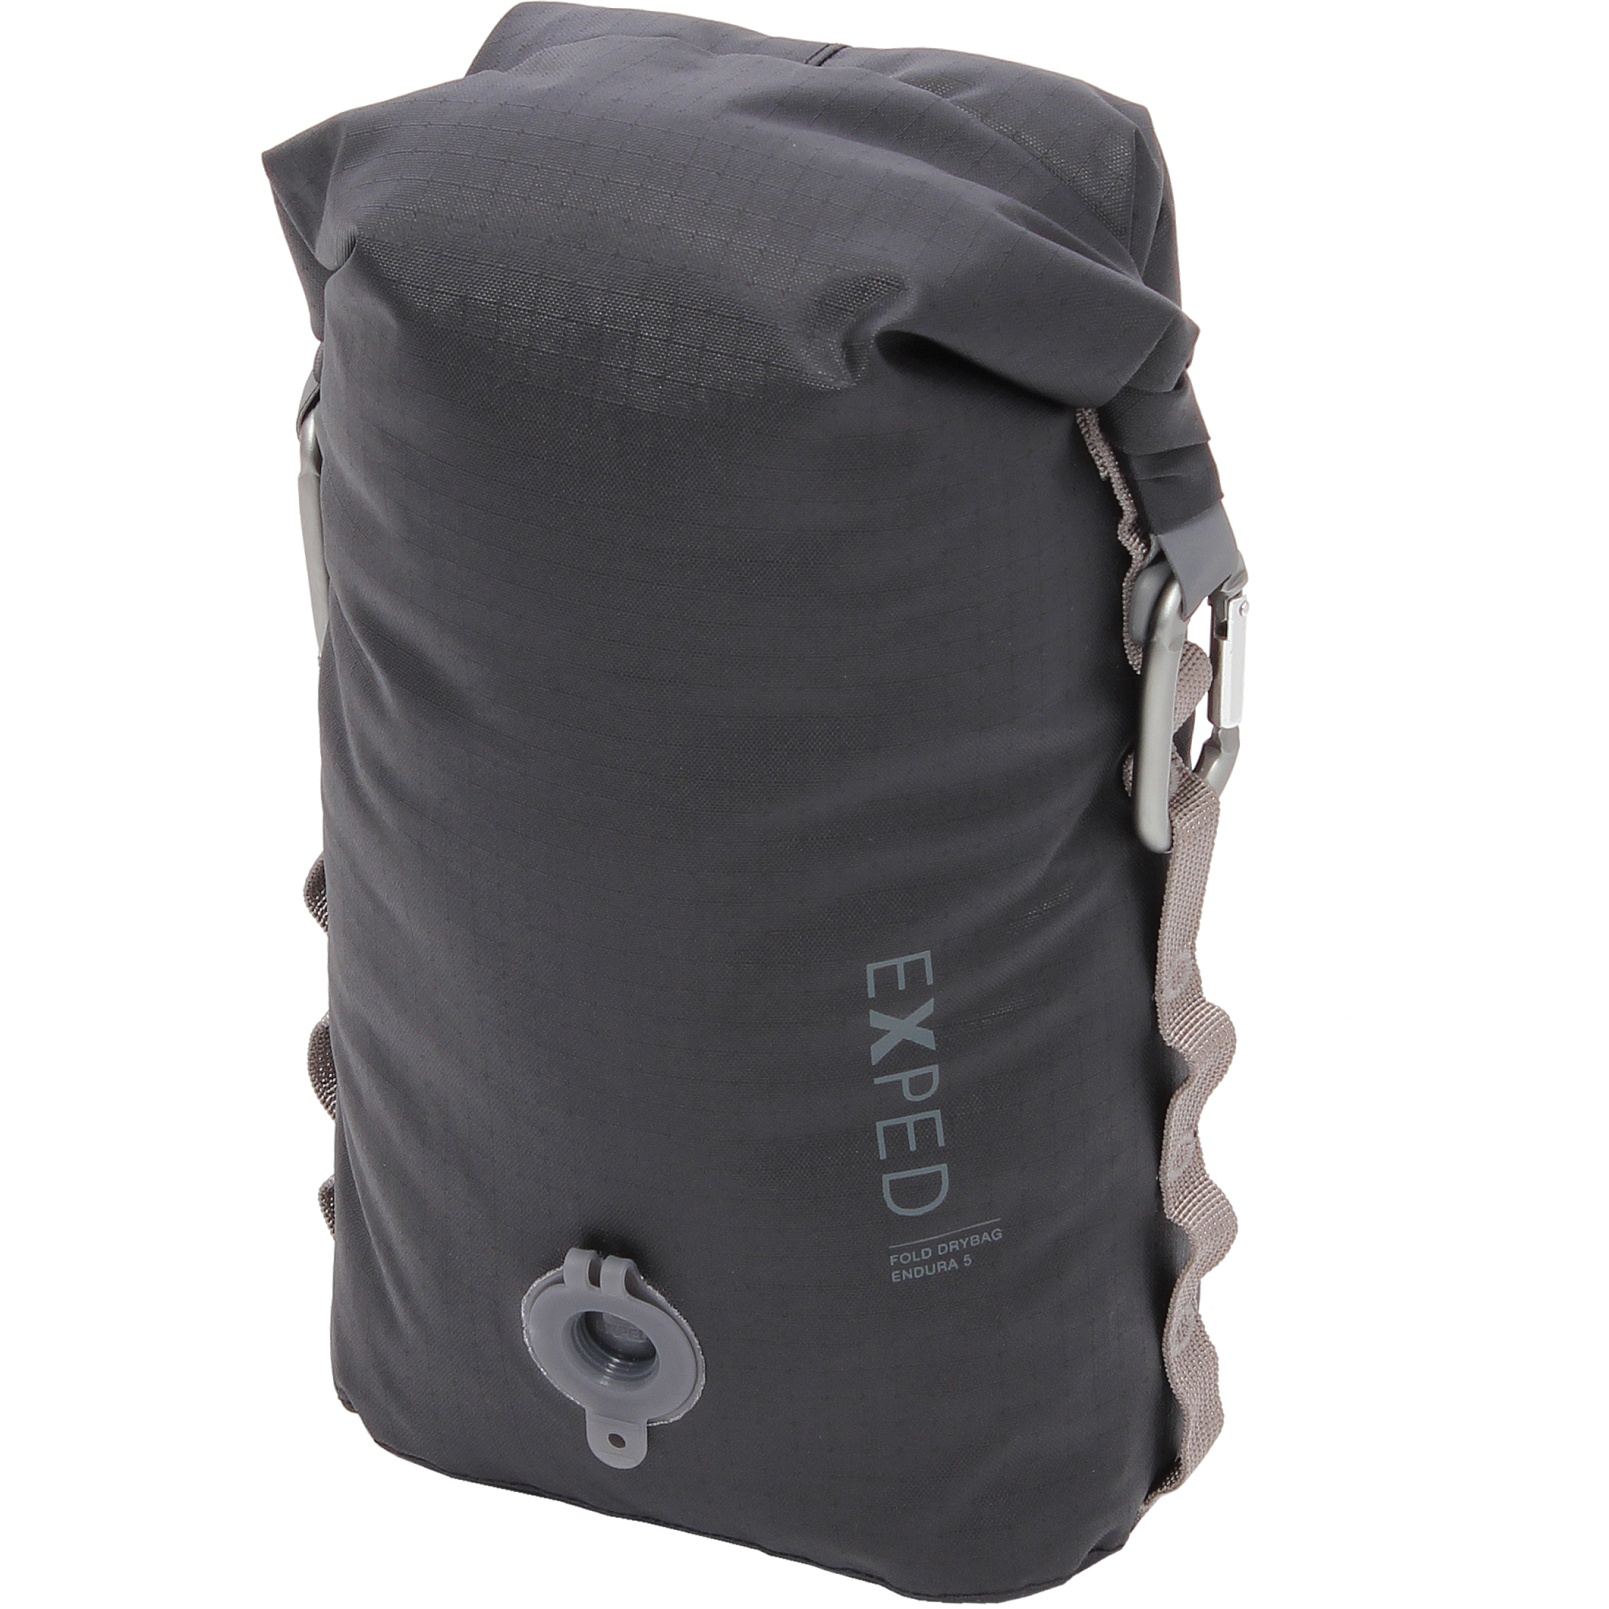 Bild von Exped Fold Drybag Endura Packsack - 5L - schwarz